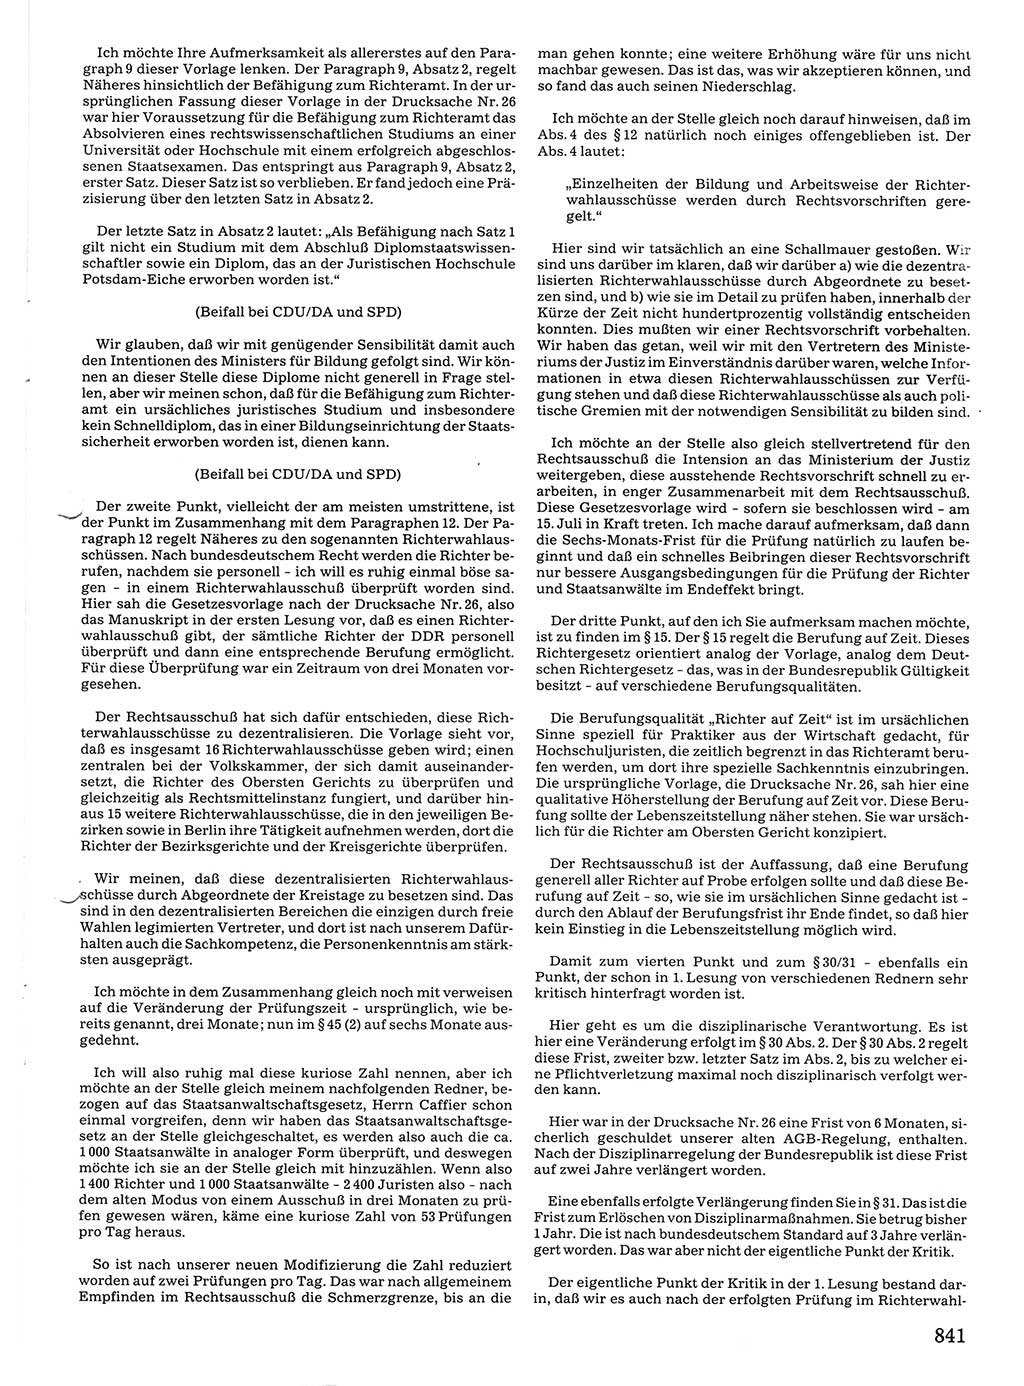 Tagungen der Volkskammer (VK) der Deutschen Demokratischen Republik (DDR), 10. Wahlperiode 1990, Seite 841 (VK. DDR 10. WP. 1990, Prot. Tg. 1-38, 5.4.-2.10.1990, S. 841)